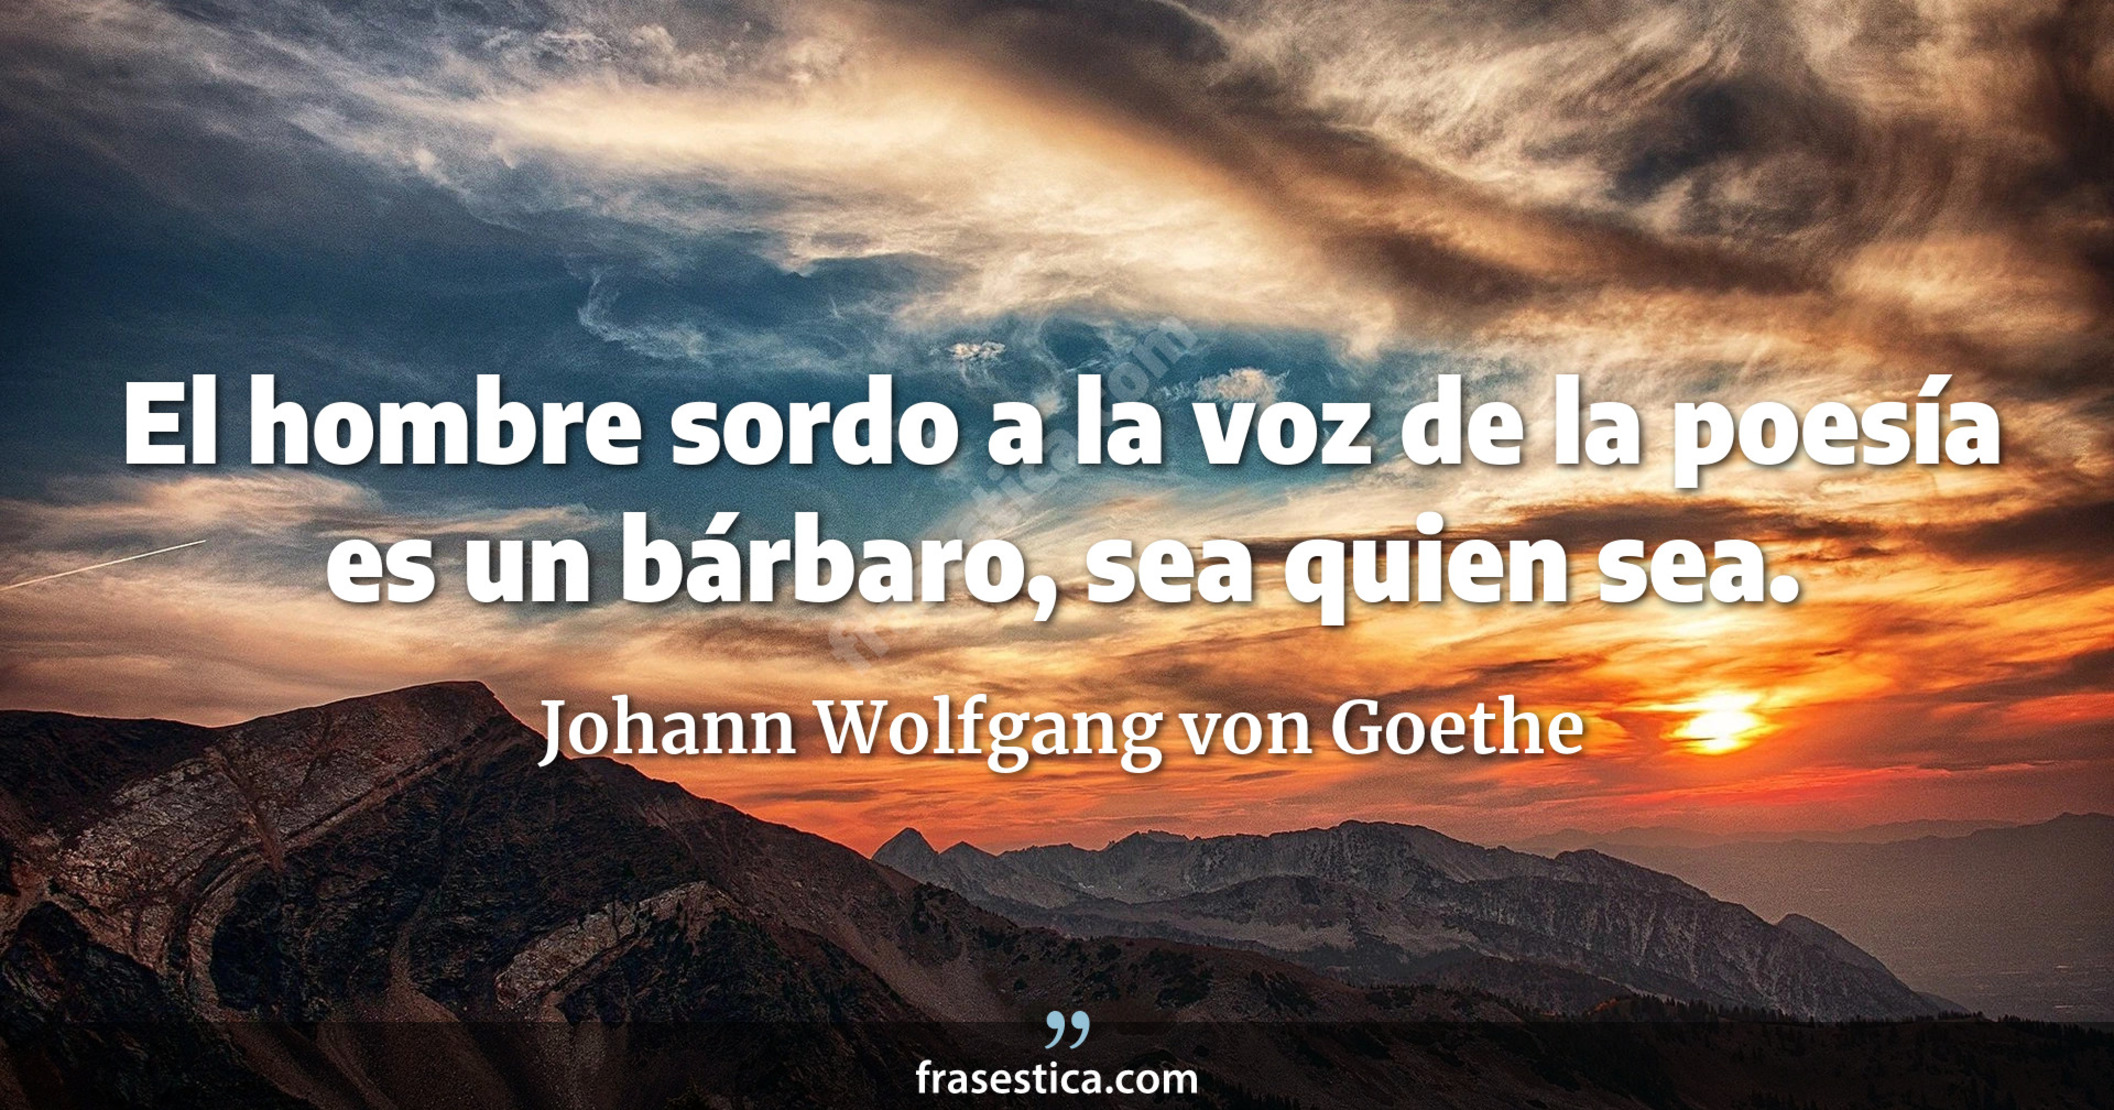 El hombre sordo a la voz de la poesía es un bárbaro, sea quien sea. - Johann Wolfgang von Goethe